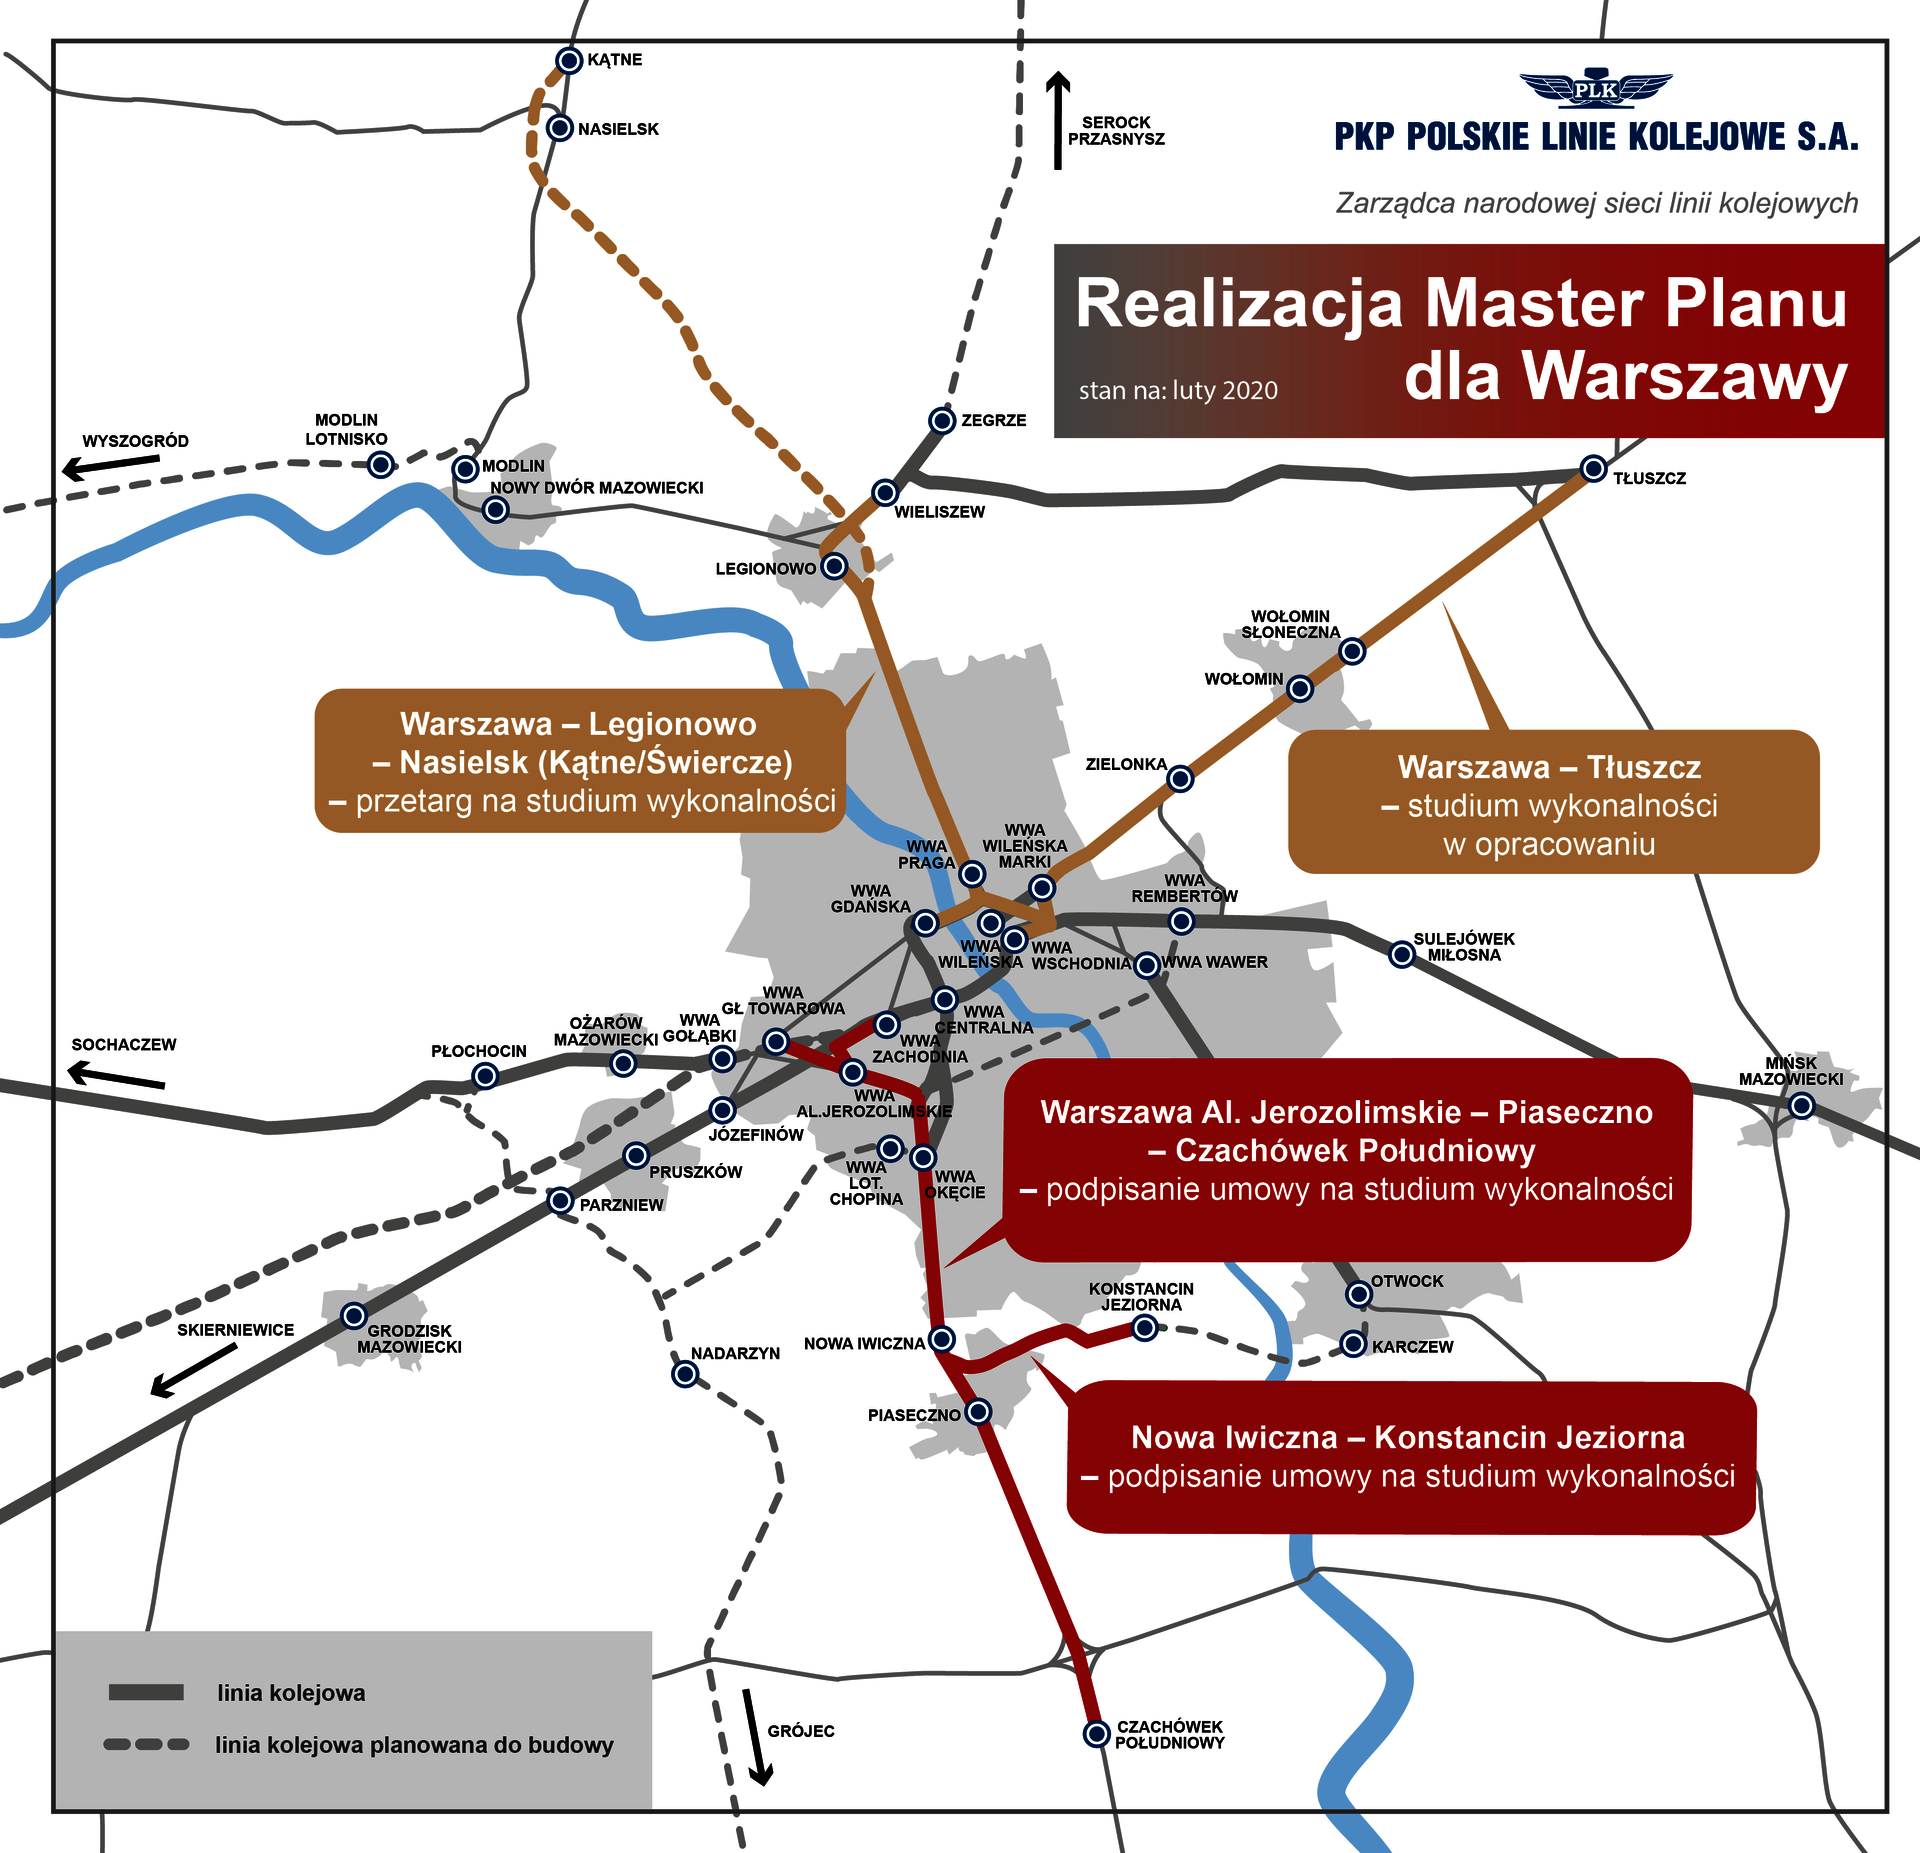 Realizacja Master Planu dla Warszawy - infografika